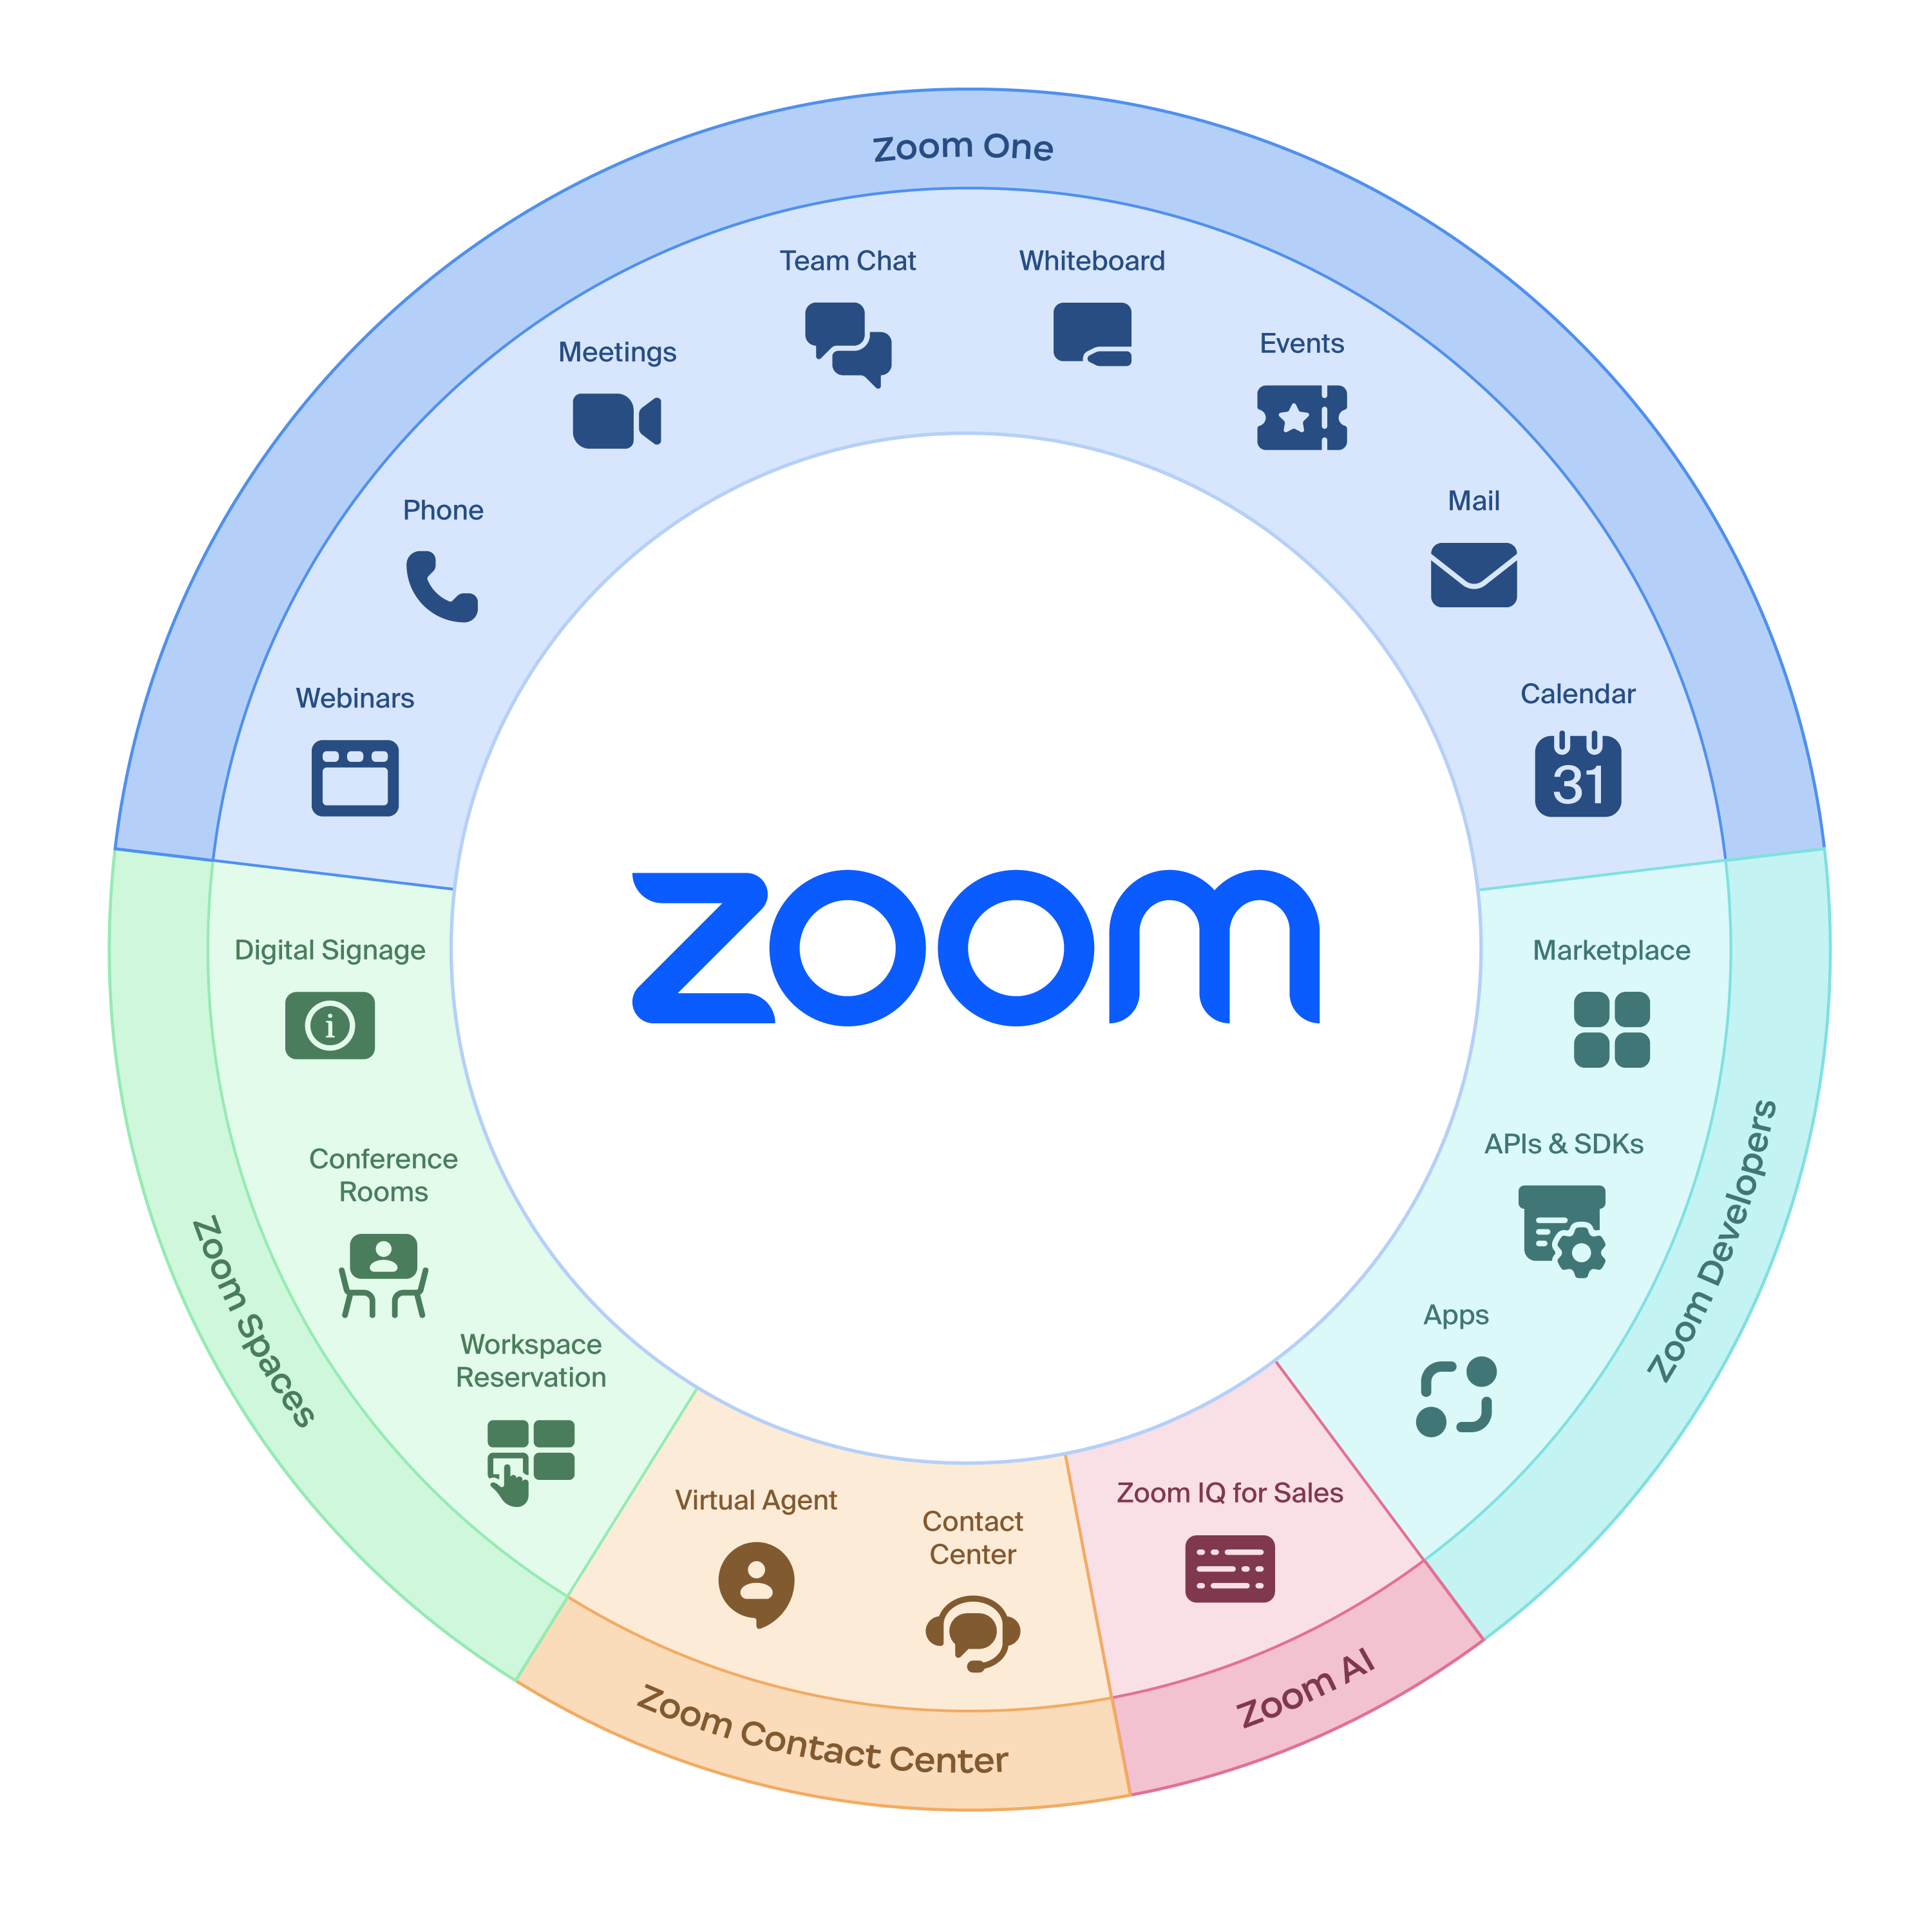 Zoom One - giải pháp đột phá cho việc giao tiếp và công tác từ xa